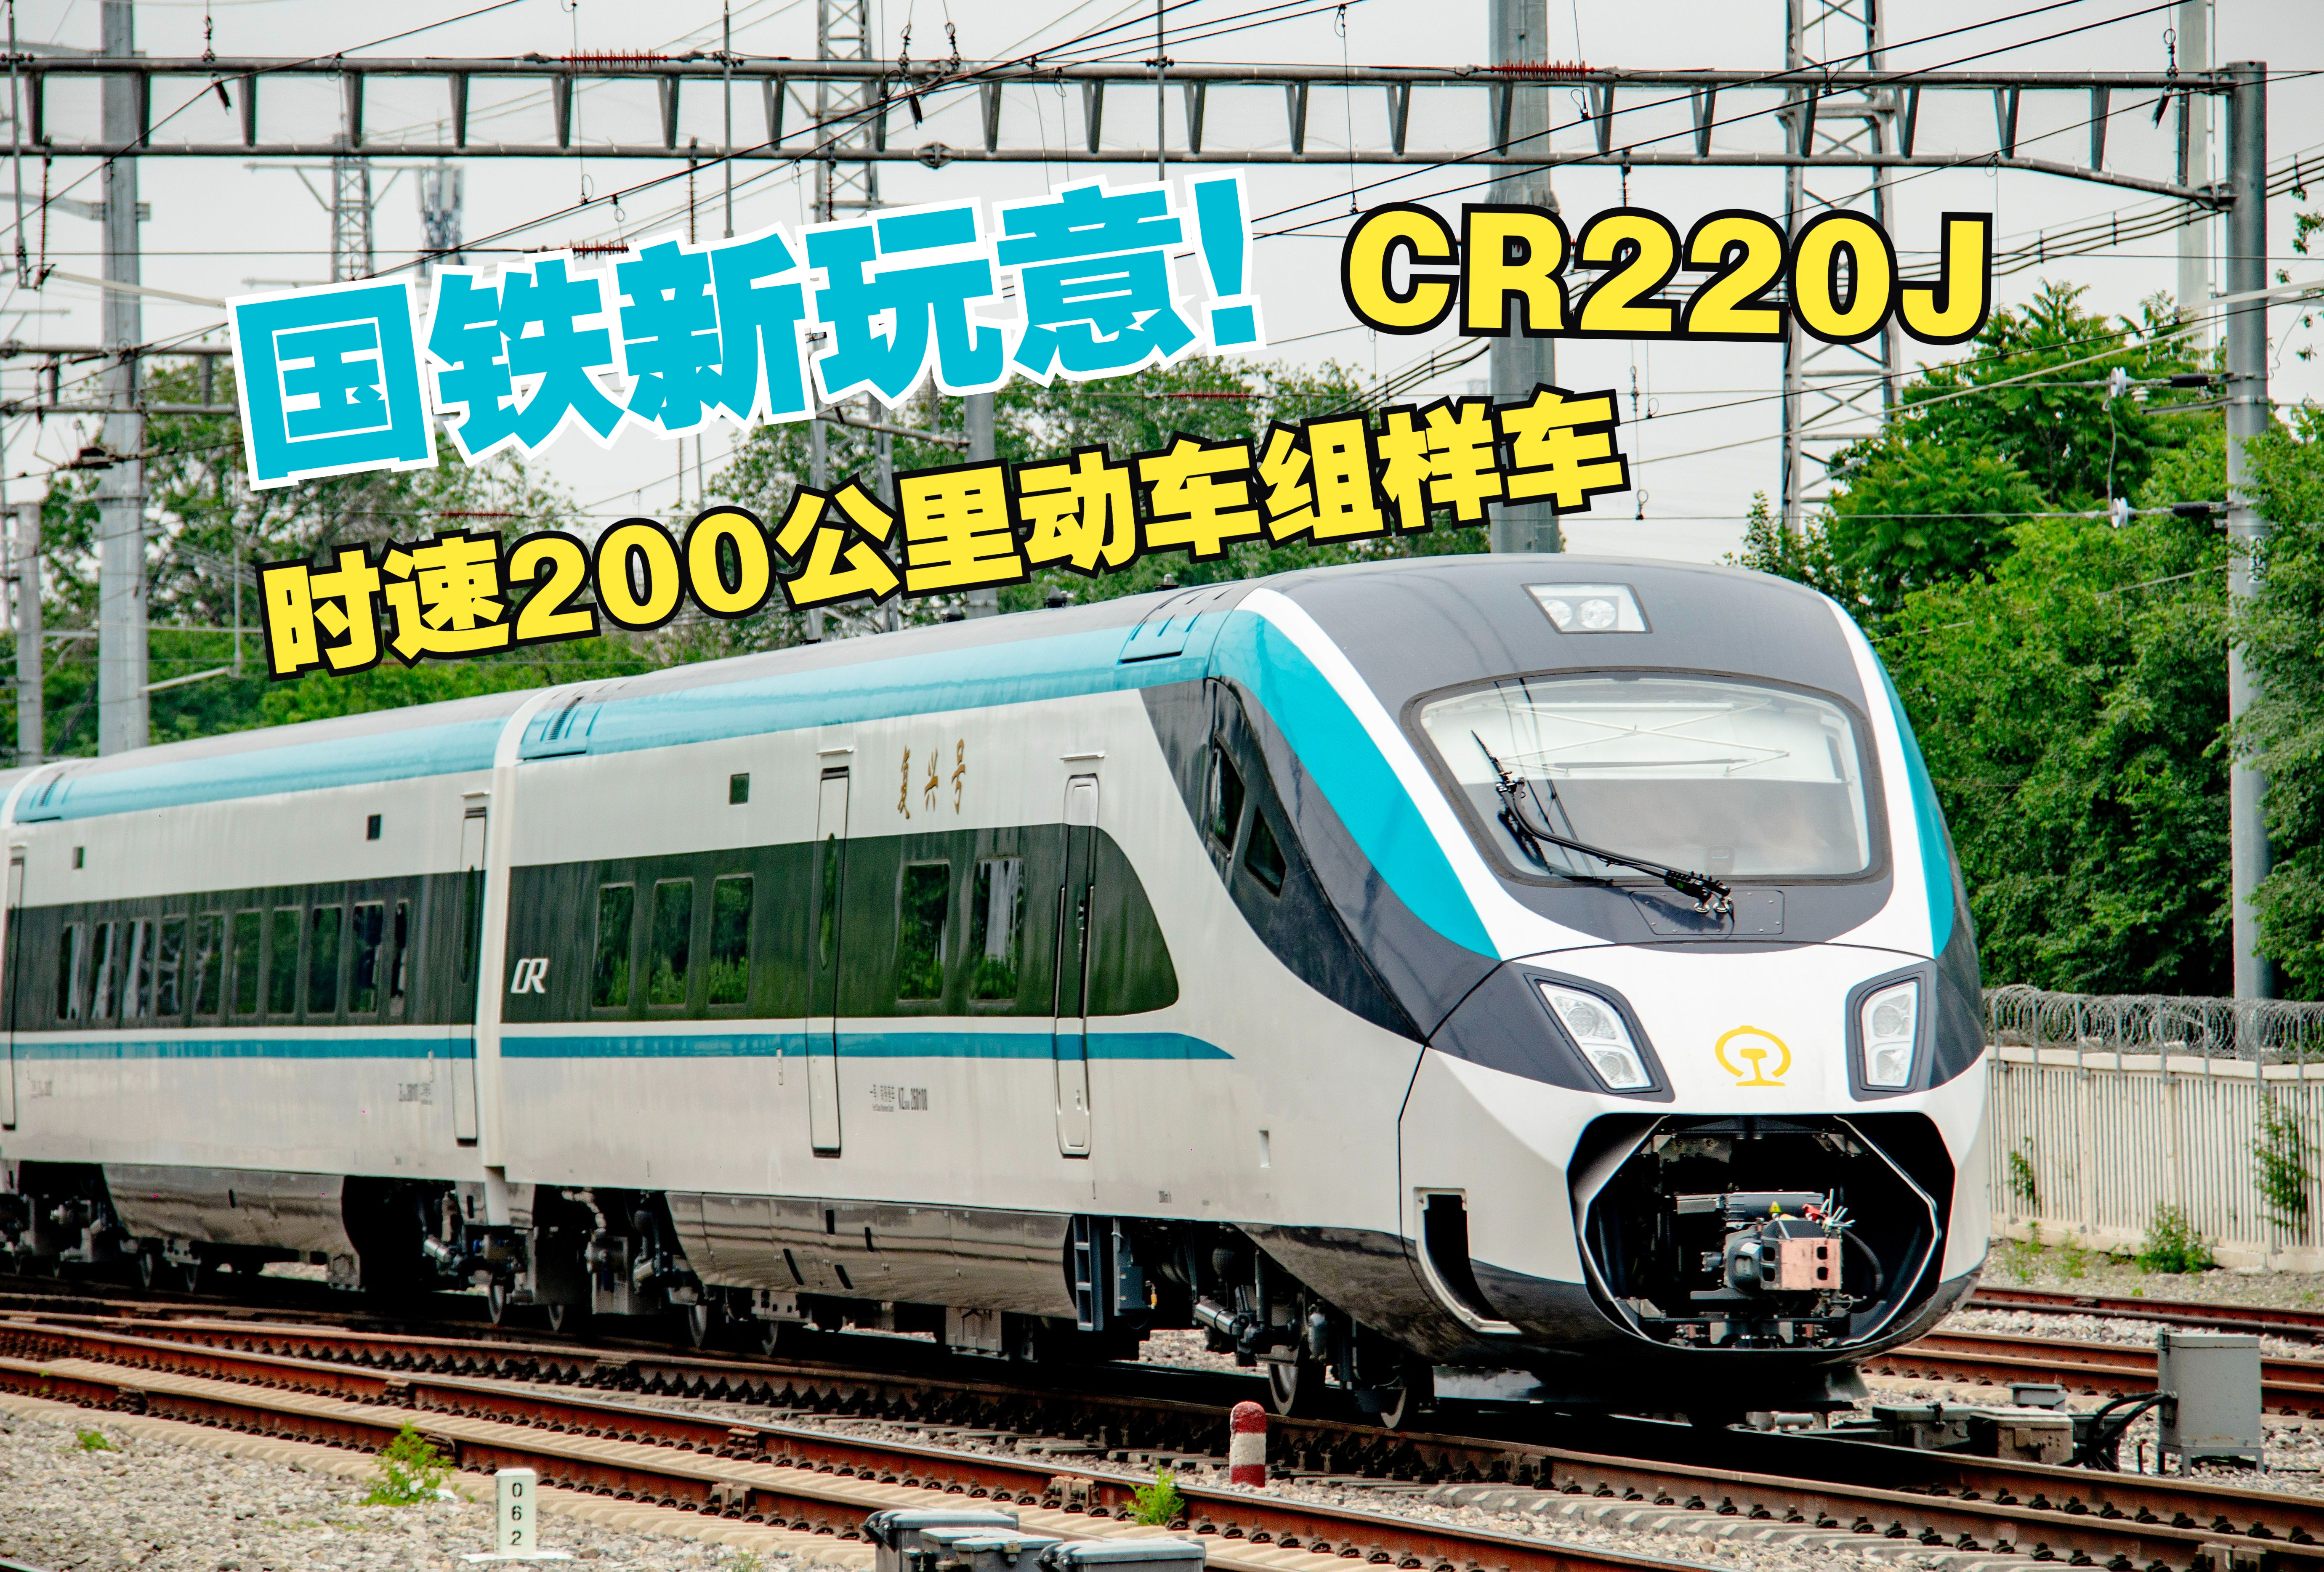 安慕希！视觉极佳！中车浦镇乳业新产品，CR220J时速200公里动车组样车近日由浦镇回送至北京环形铁道试验基地。